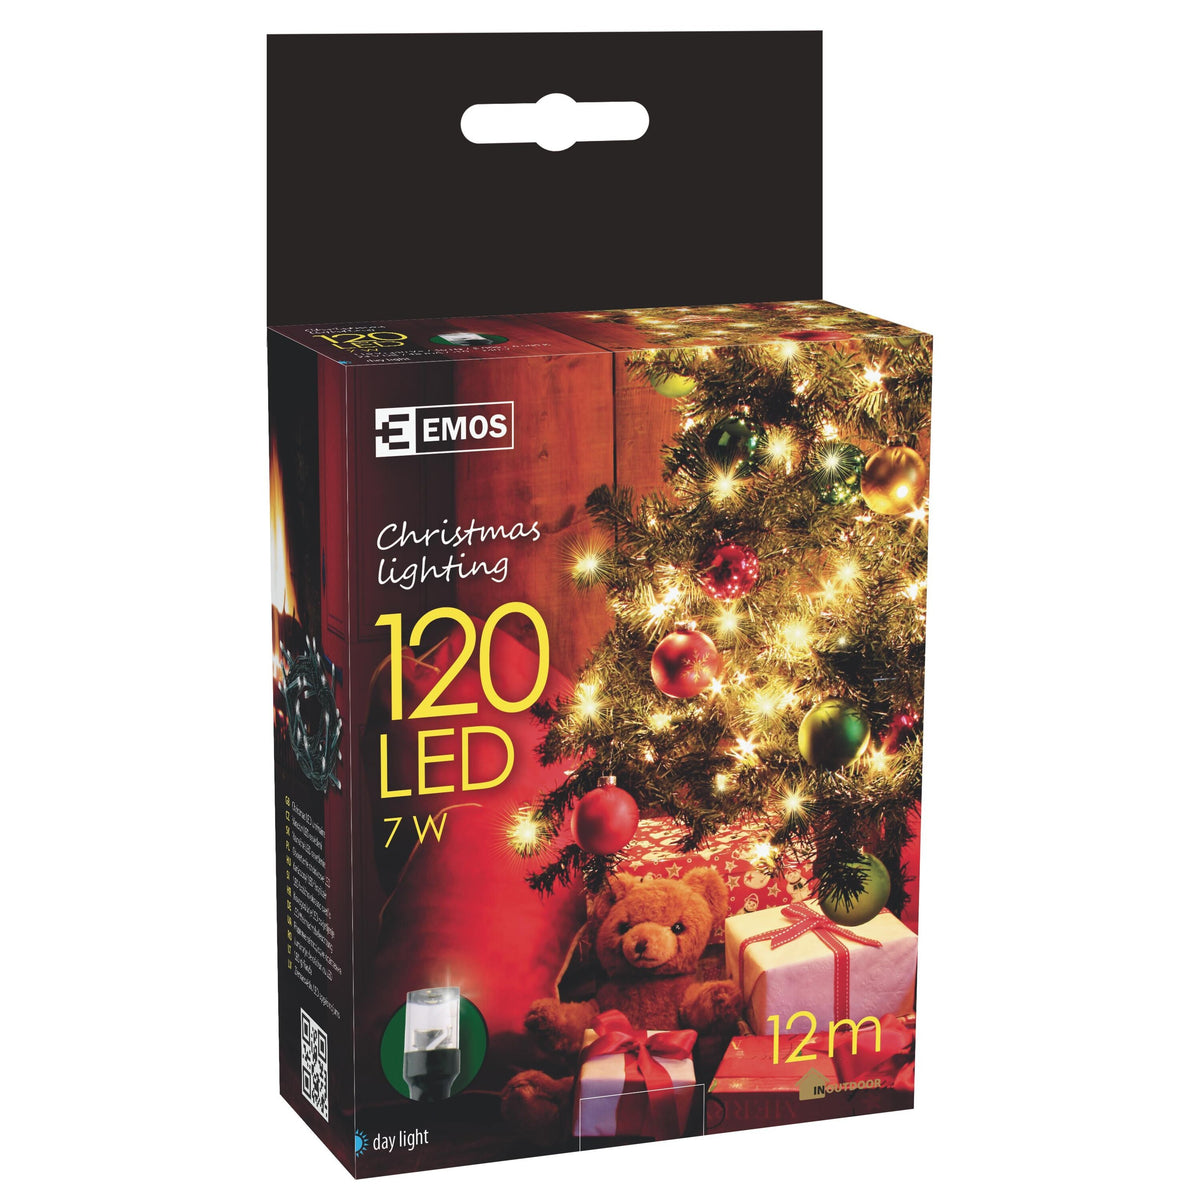 Emos 120 LED vánoční osvětlení 12M IP44 denní světlo